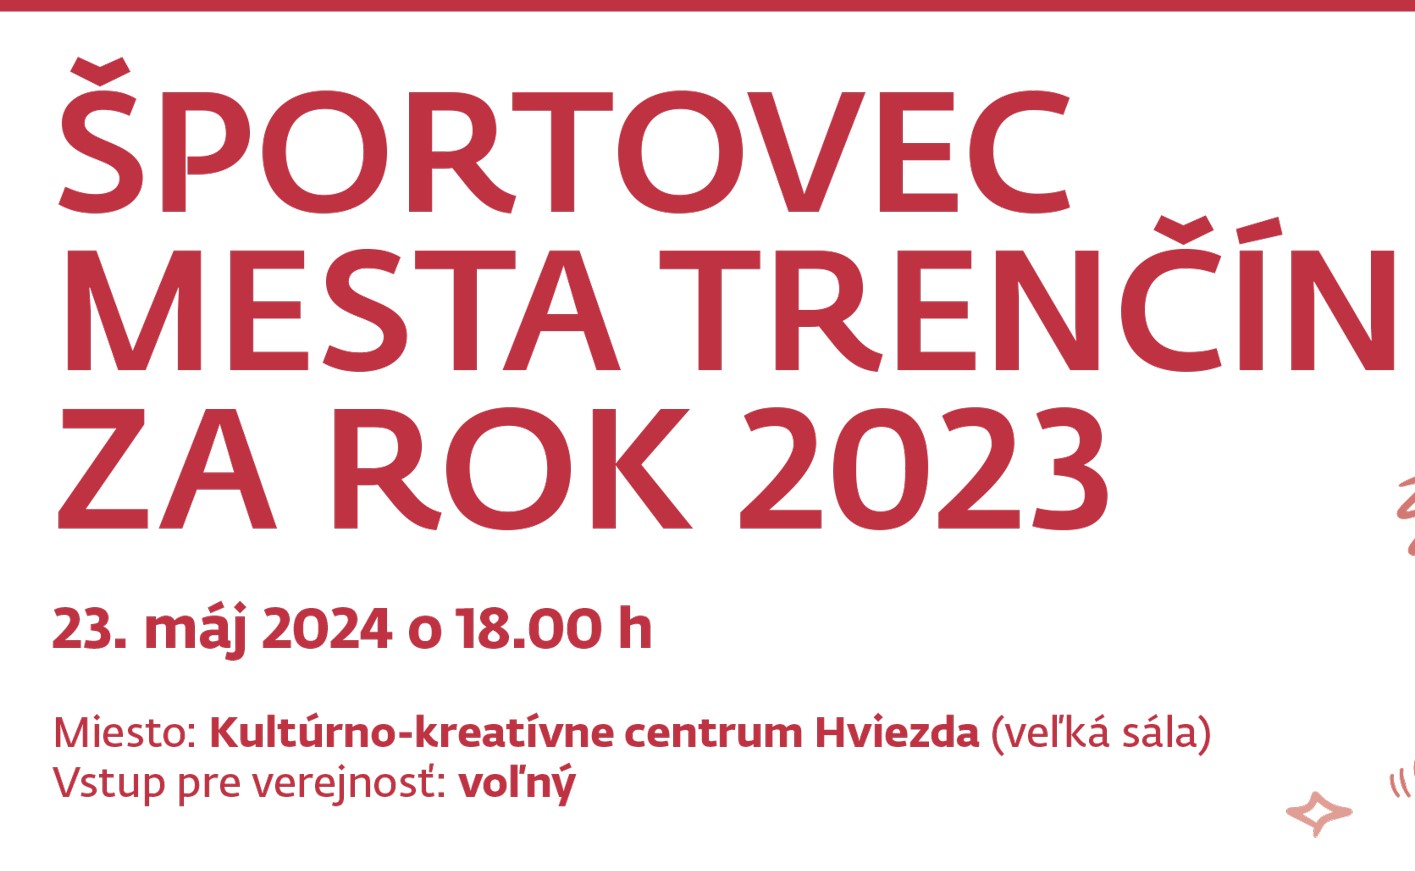 Športovec mesta Trenčín 2023 ilustrácia